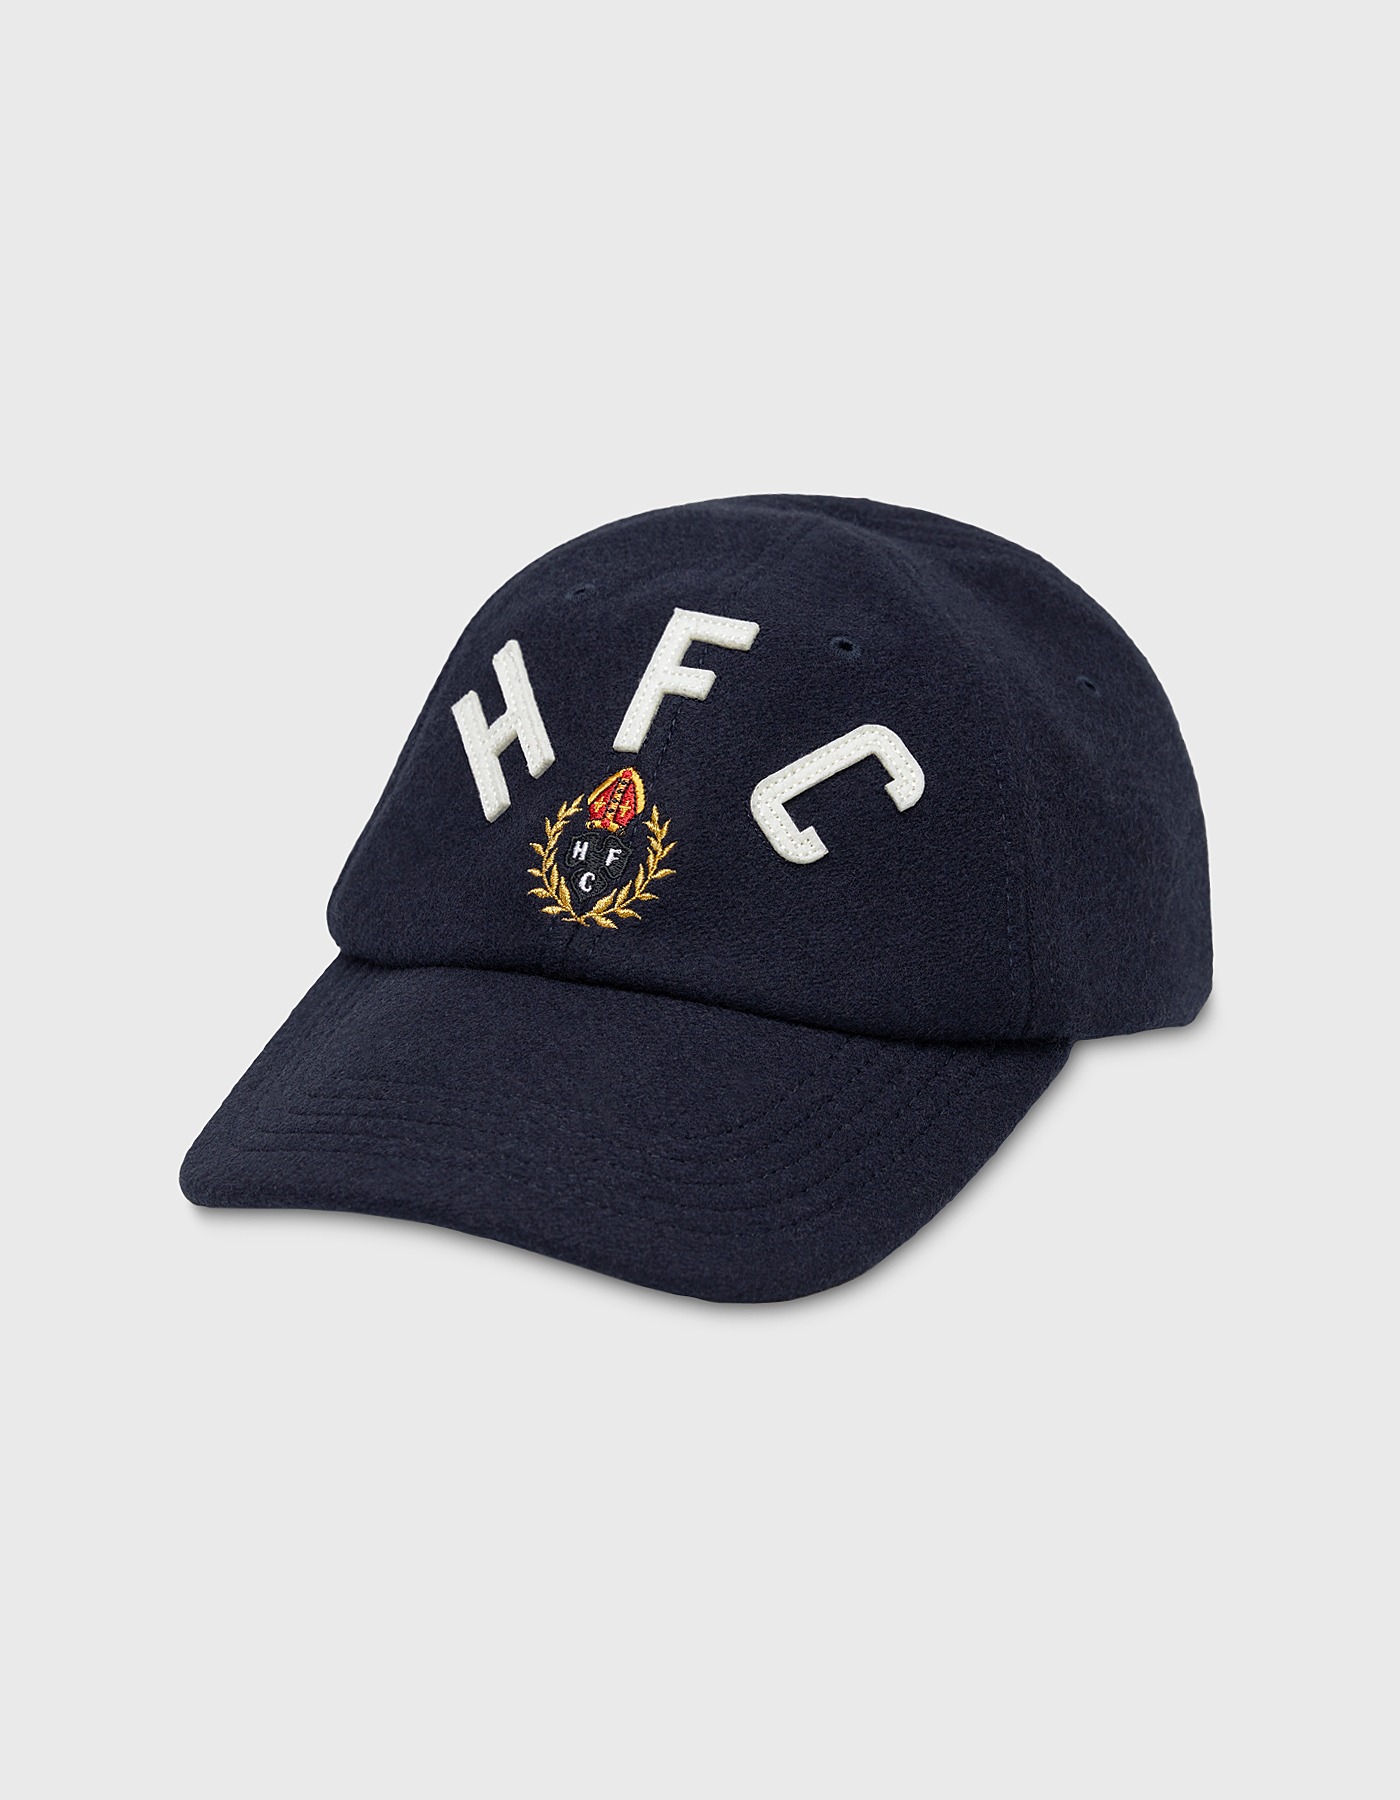 HFC CREST FELT WOOL CAP / Navy